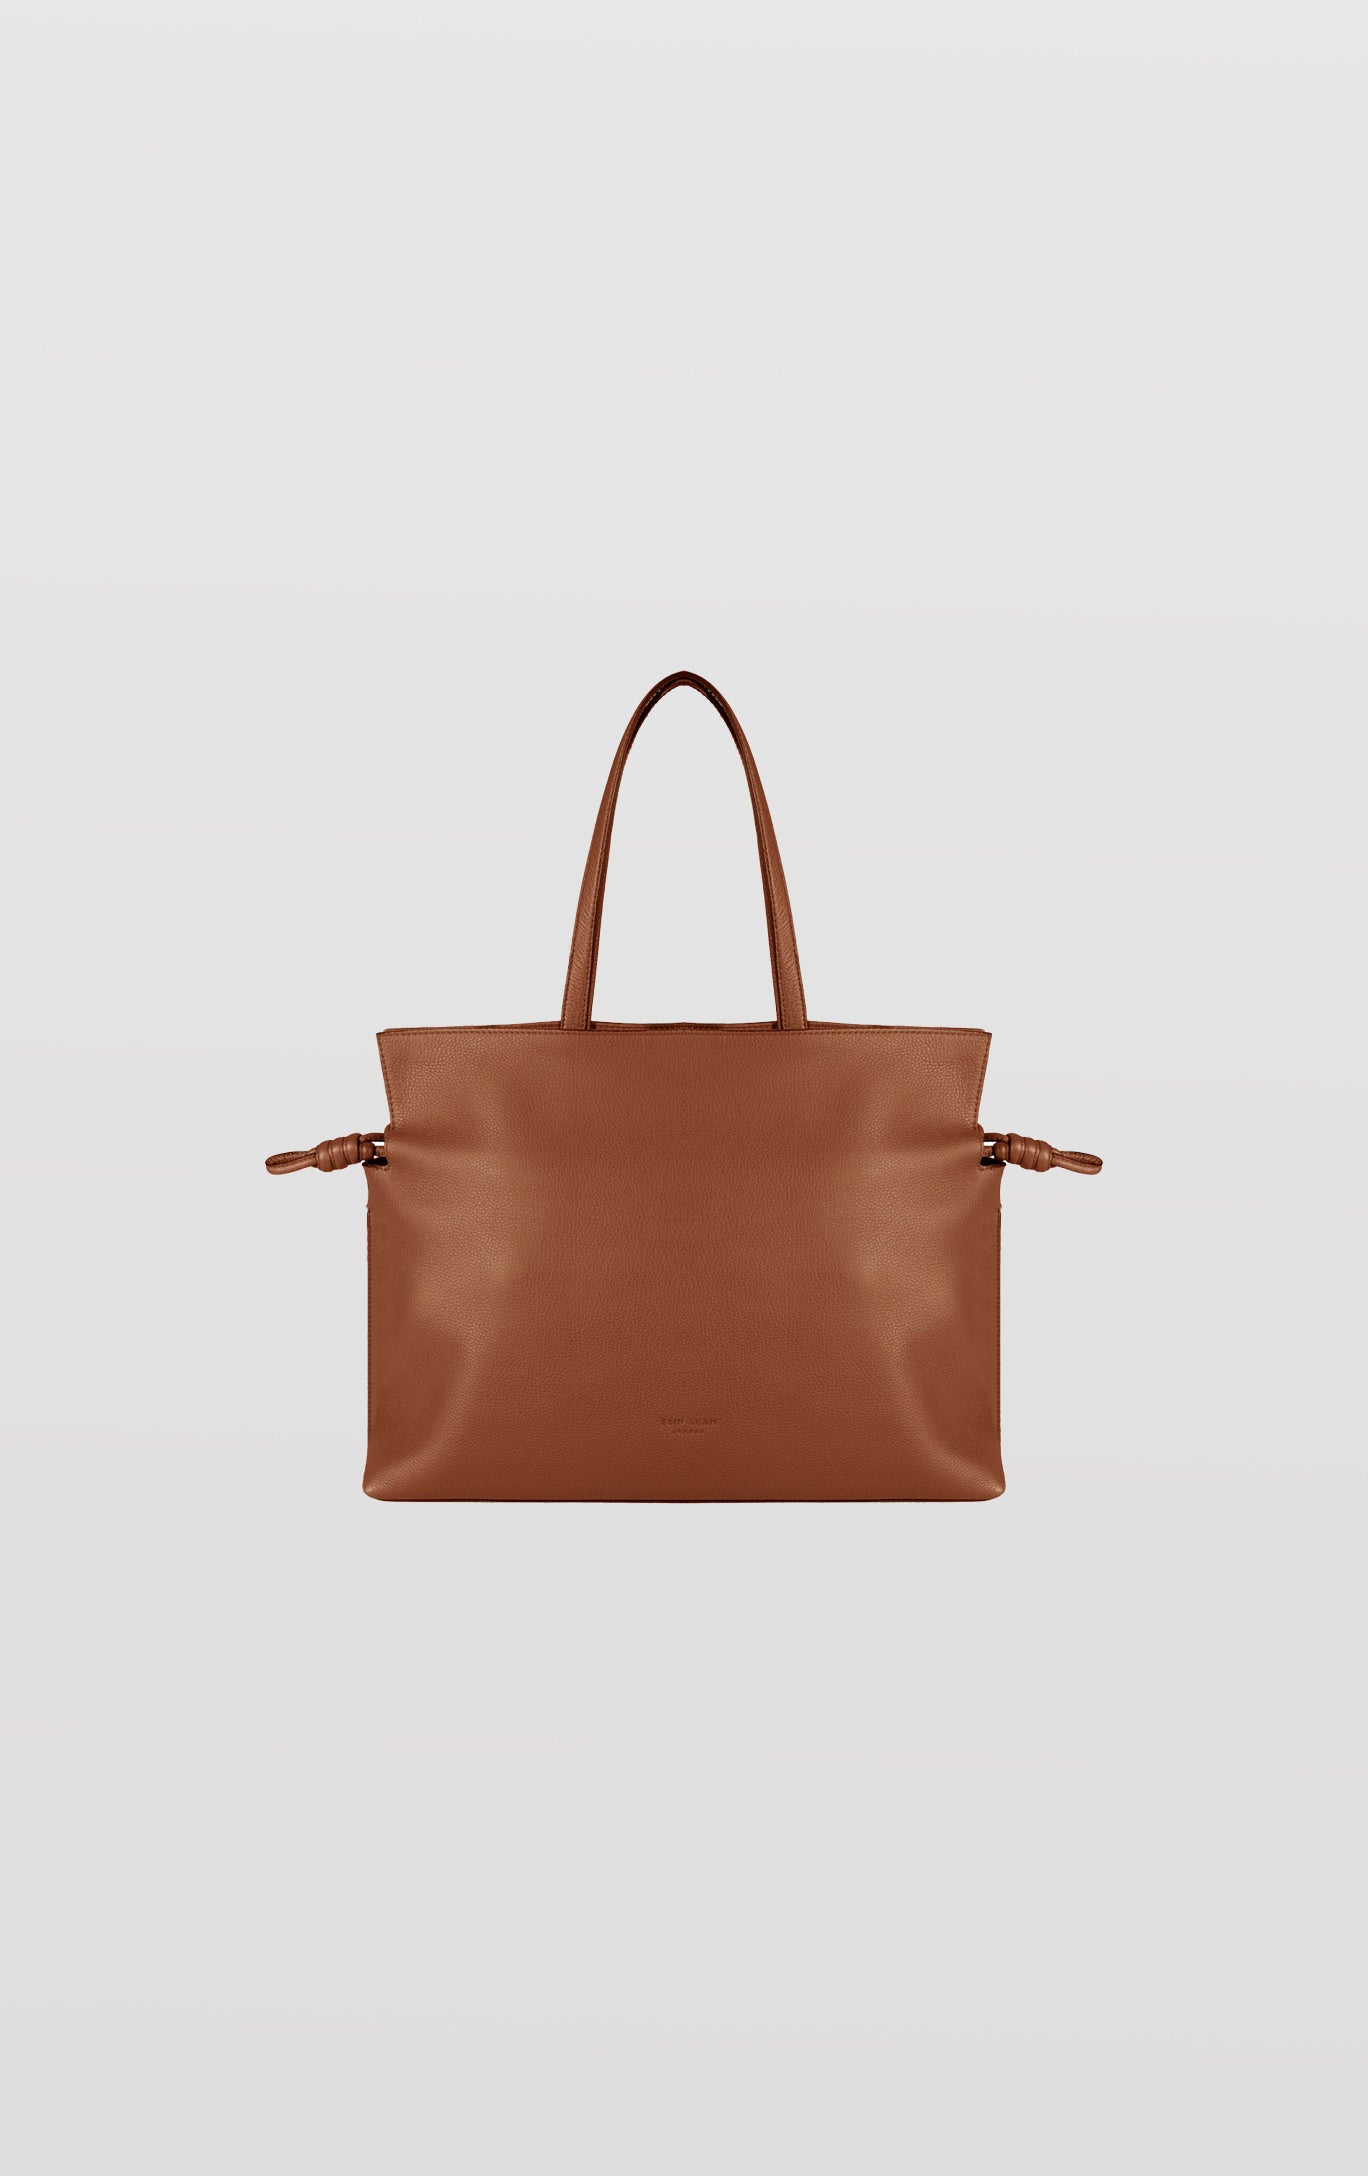 Emma, Tan Leather Tote Bag